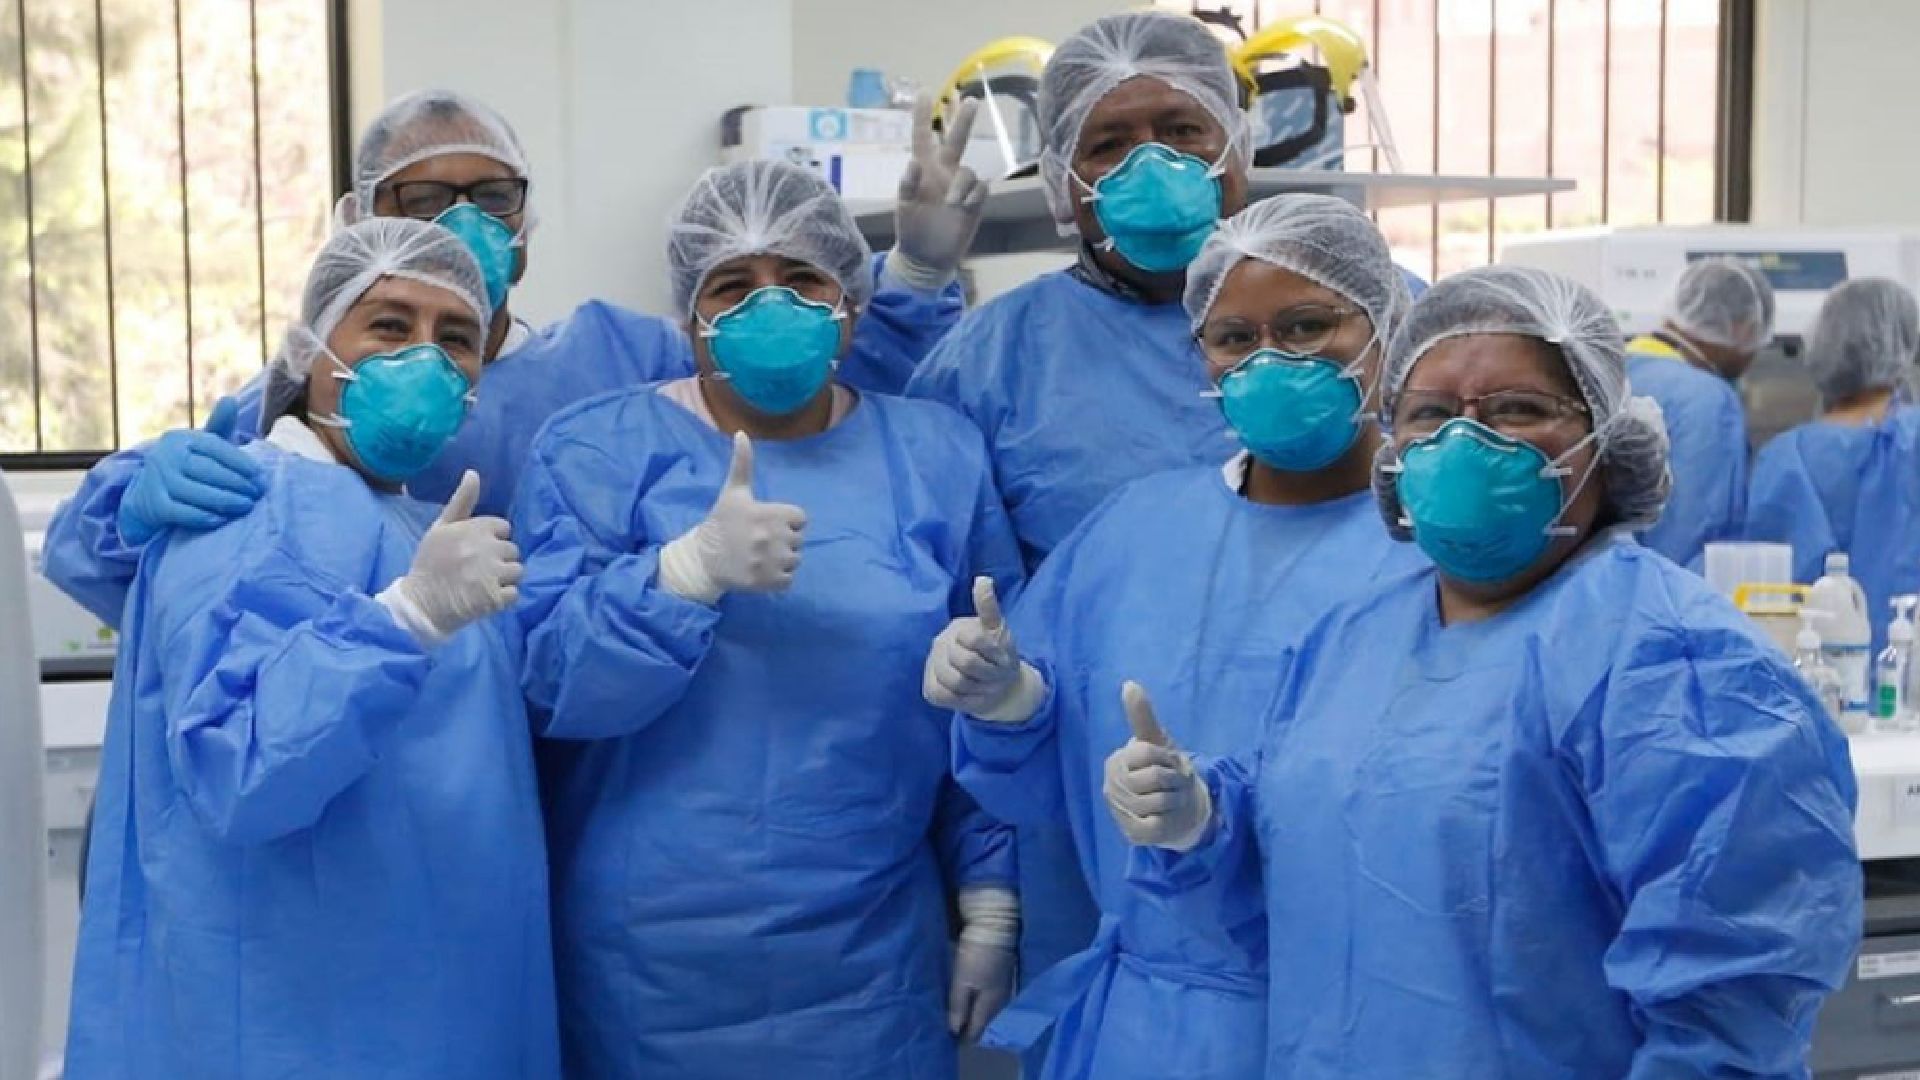 Las enfermeras peruanas tuvieron una labor muy importante durante la parte más dura de la pandemia por COVID-19  (Andina)